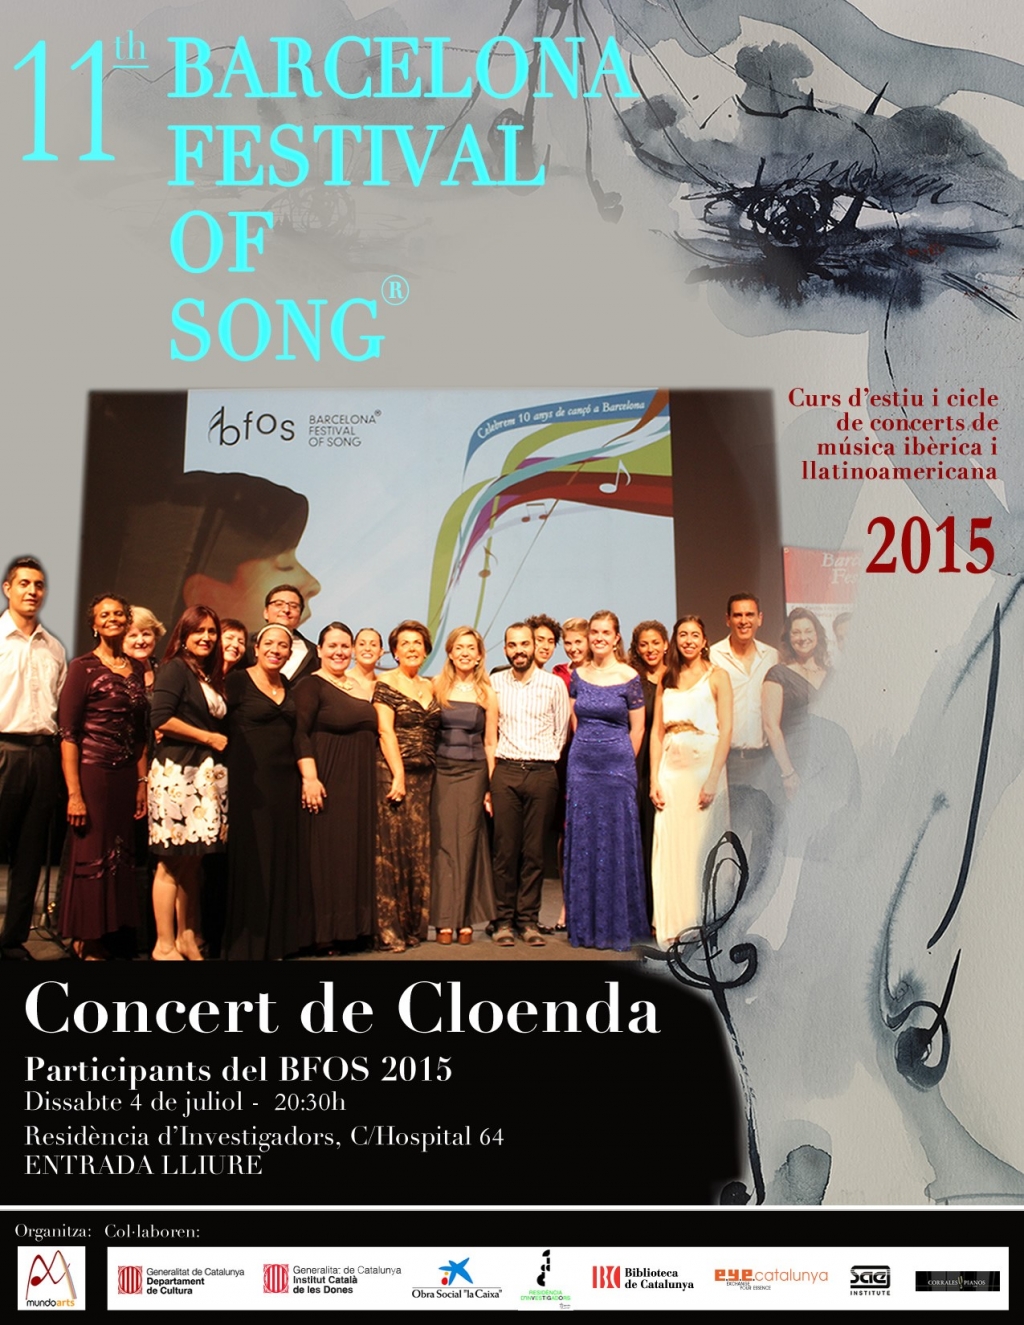 Barcelona Festival of Song